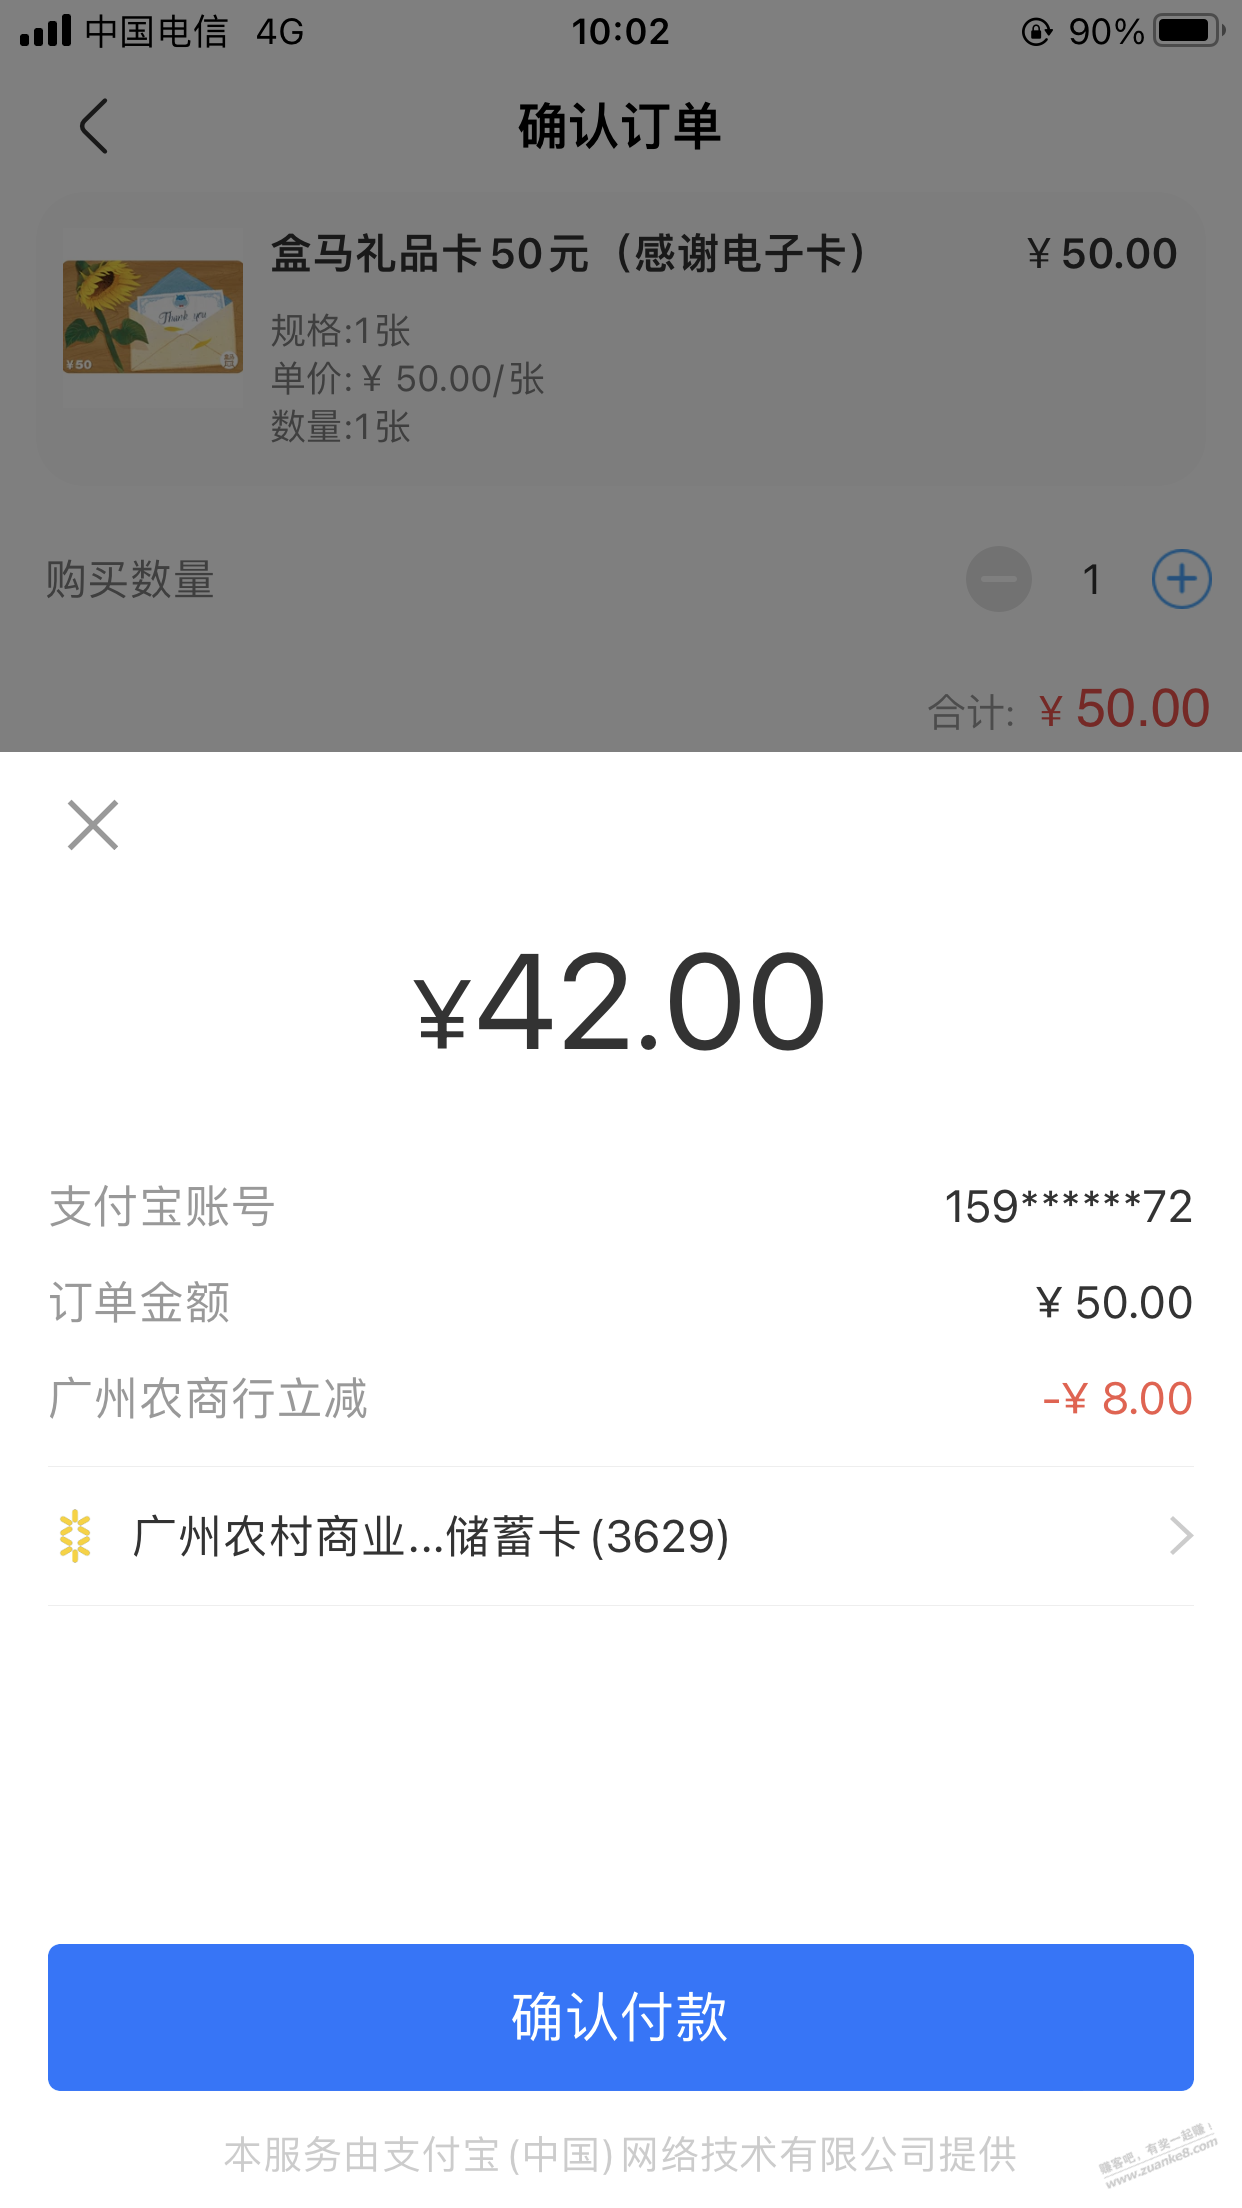 刚出了-广州农商储蓄卡 盒马50-8-惠小助(52huixz.com)